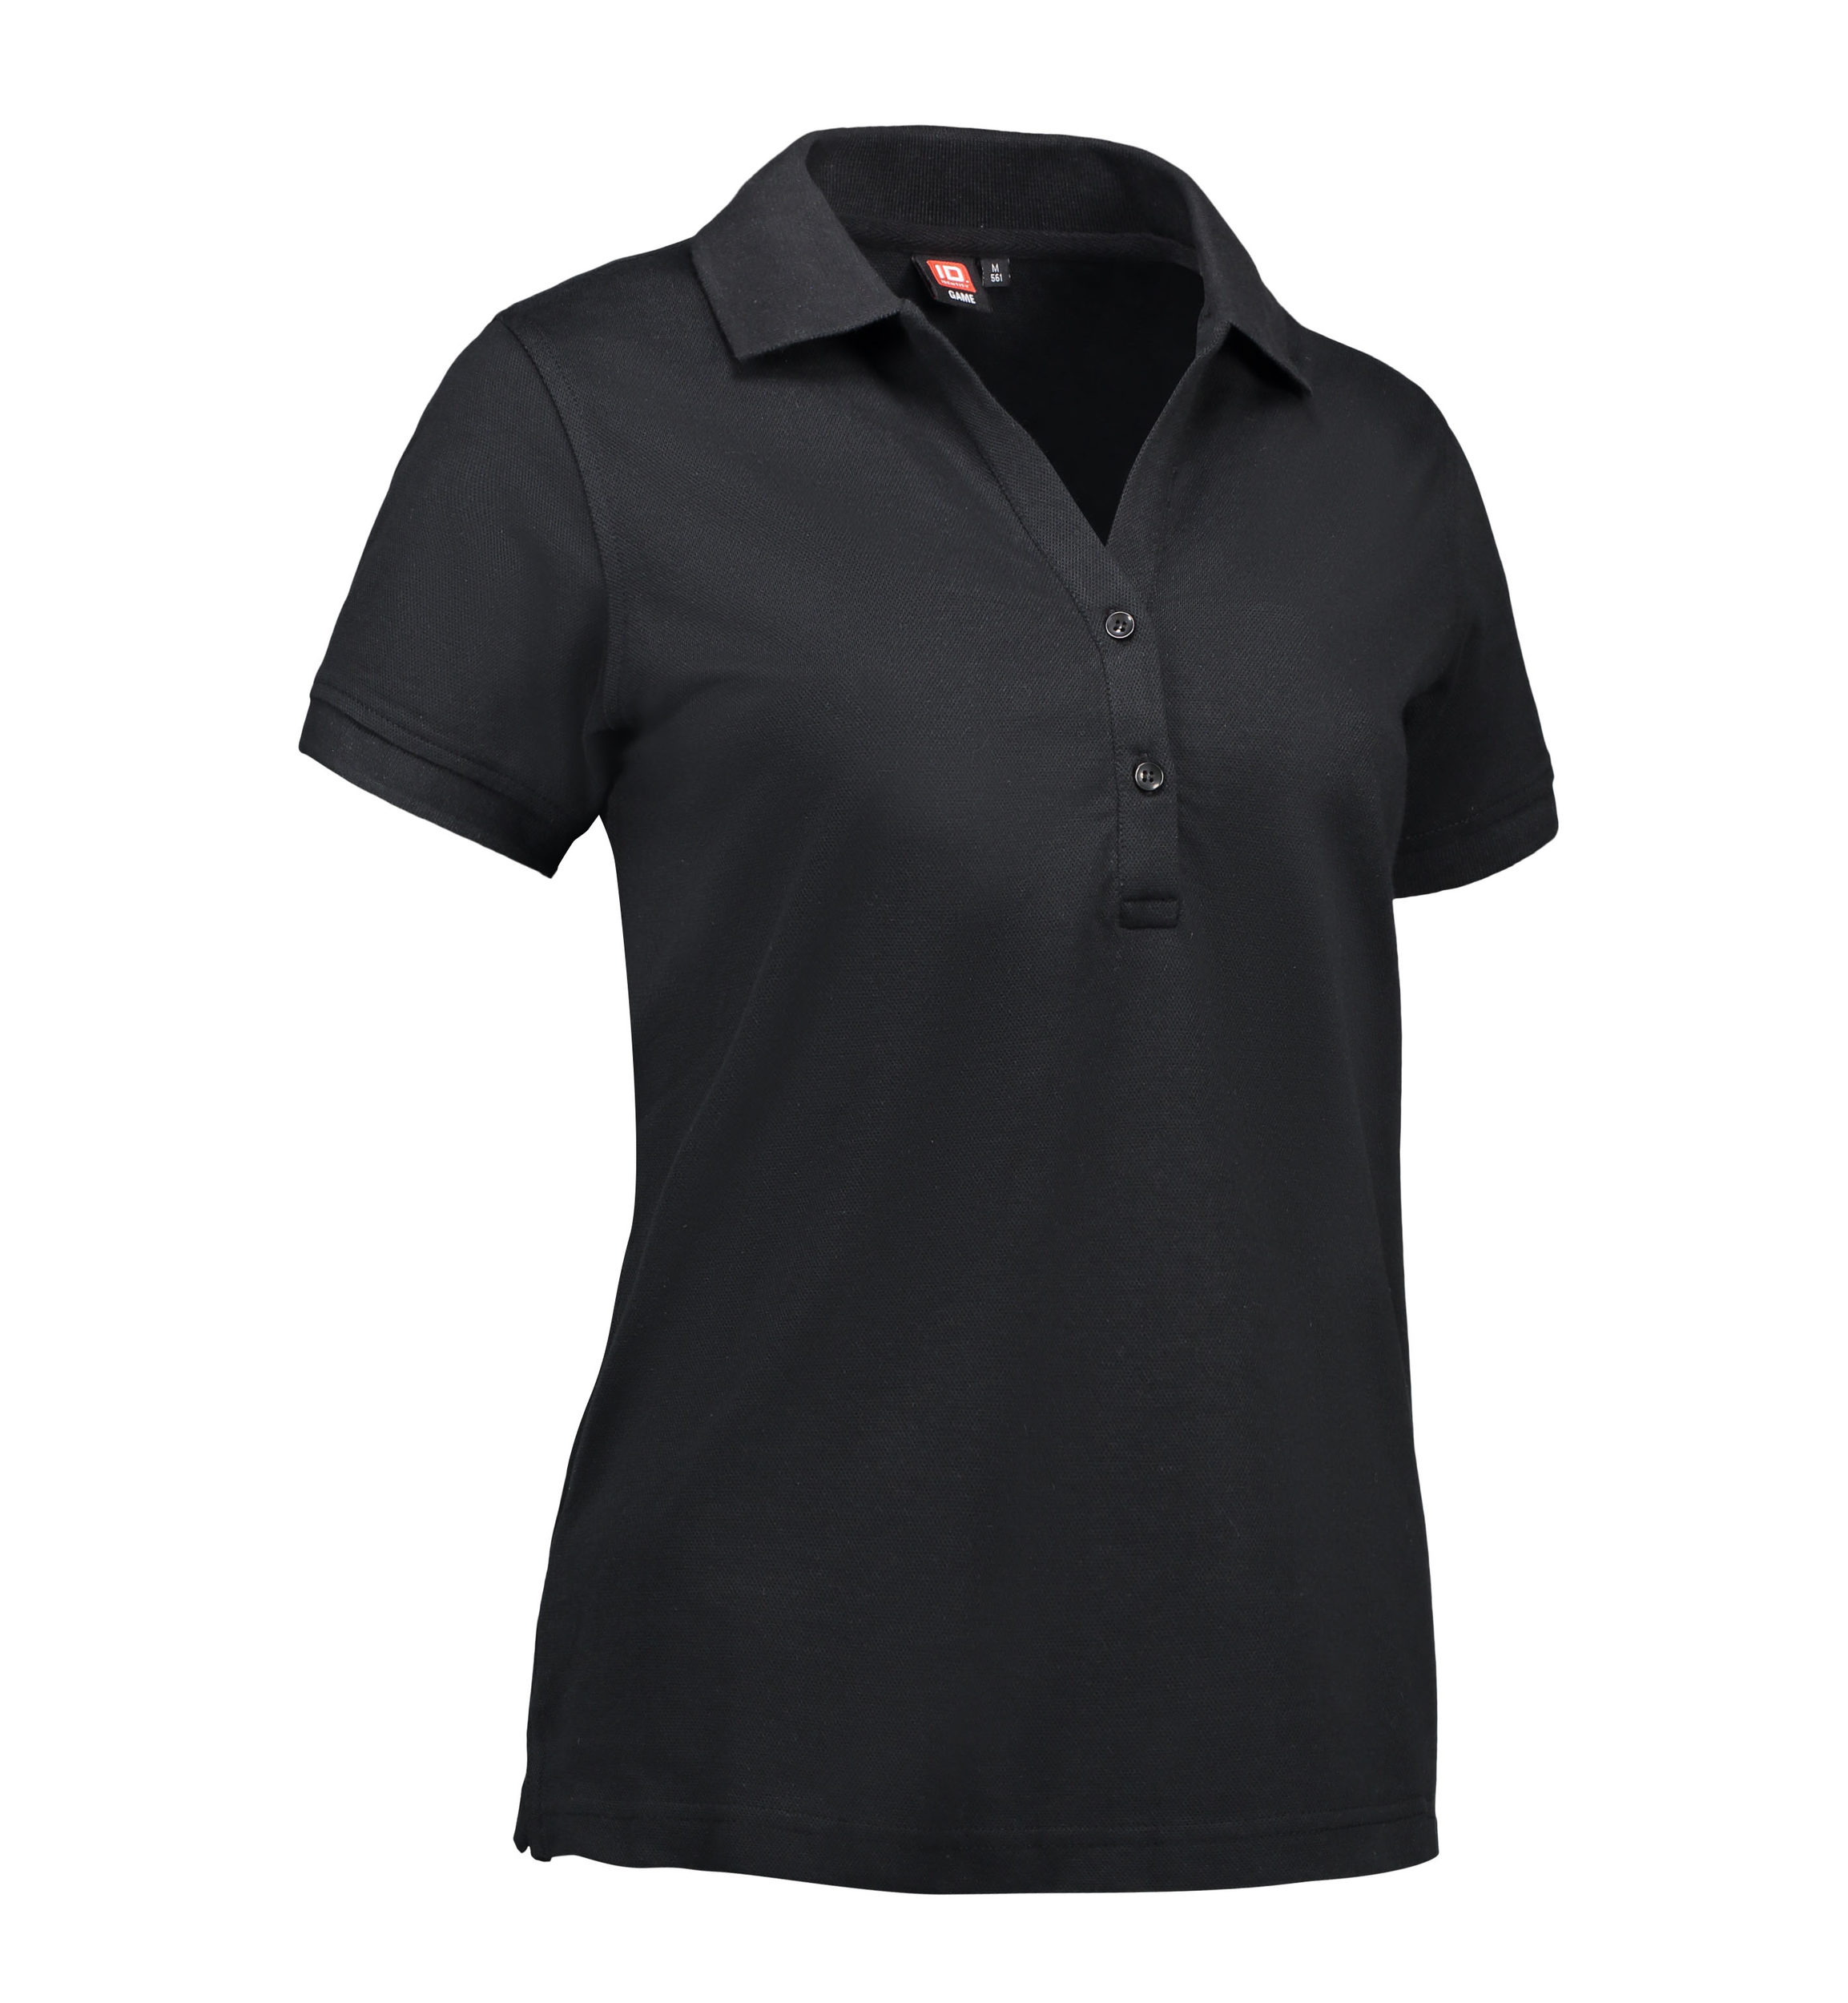 Se Polo t-shirt til damer i sort - 2XL hos Sygeplejebutikken.dk